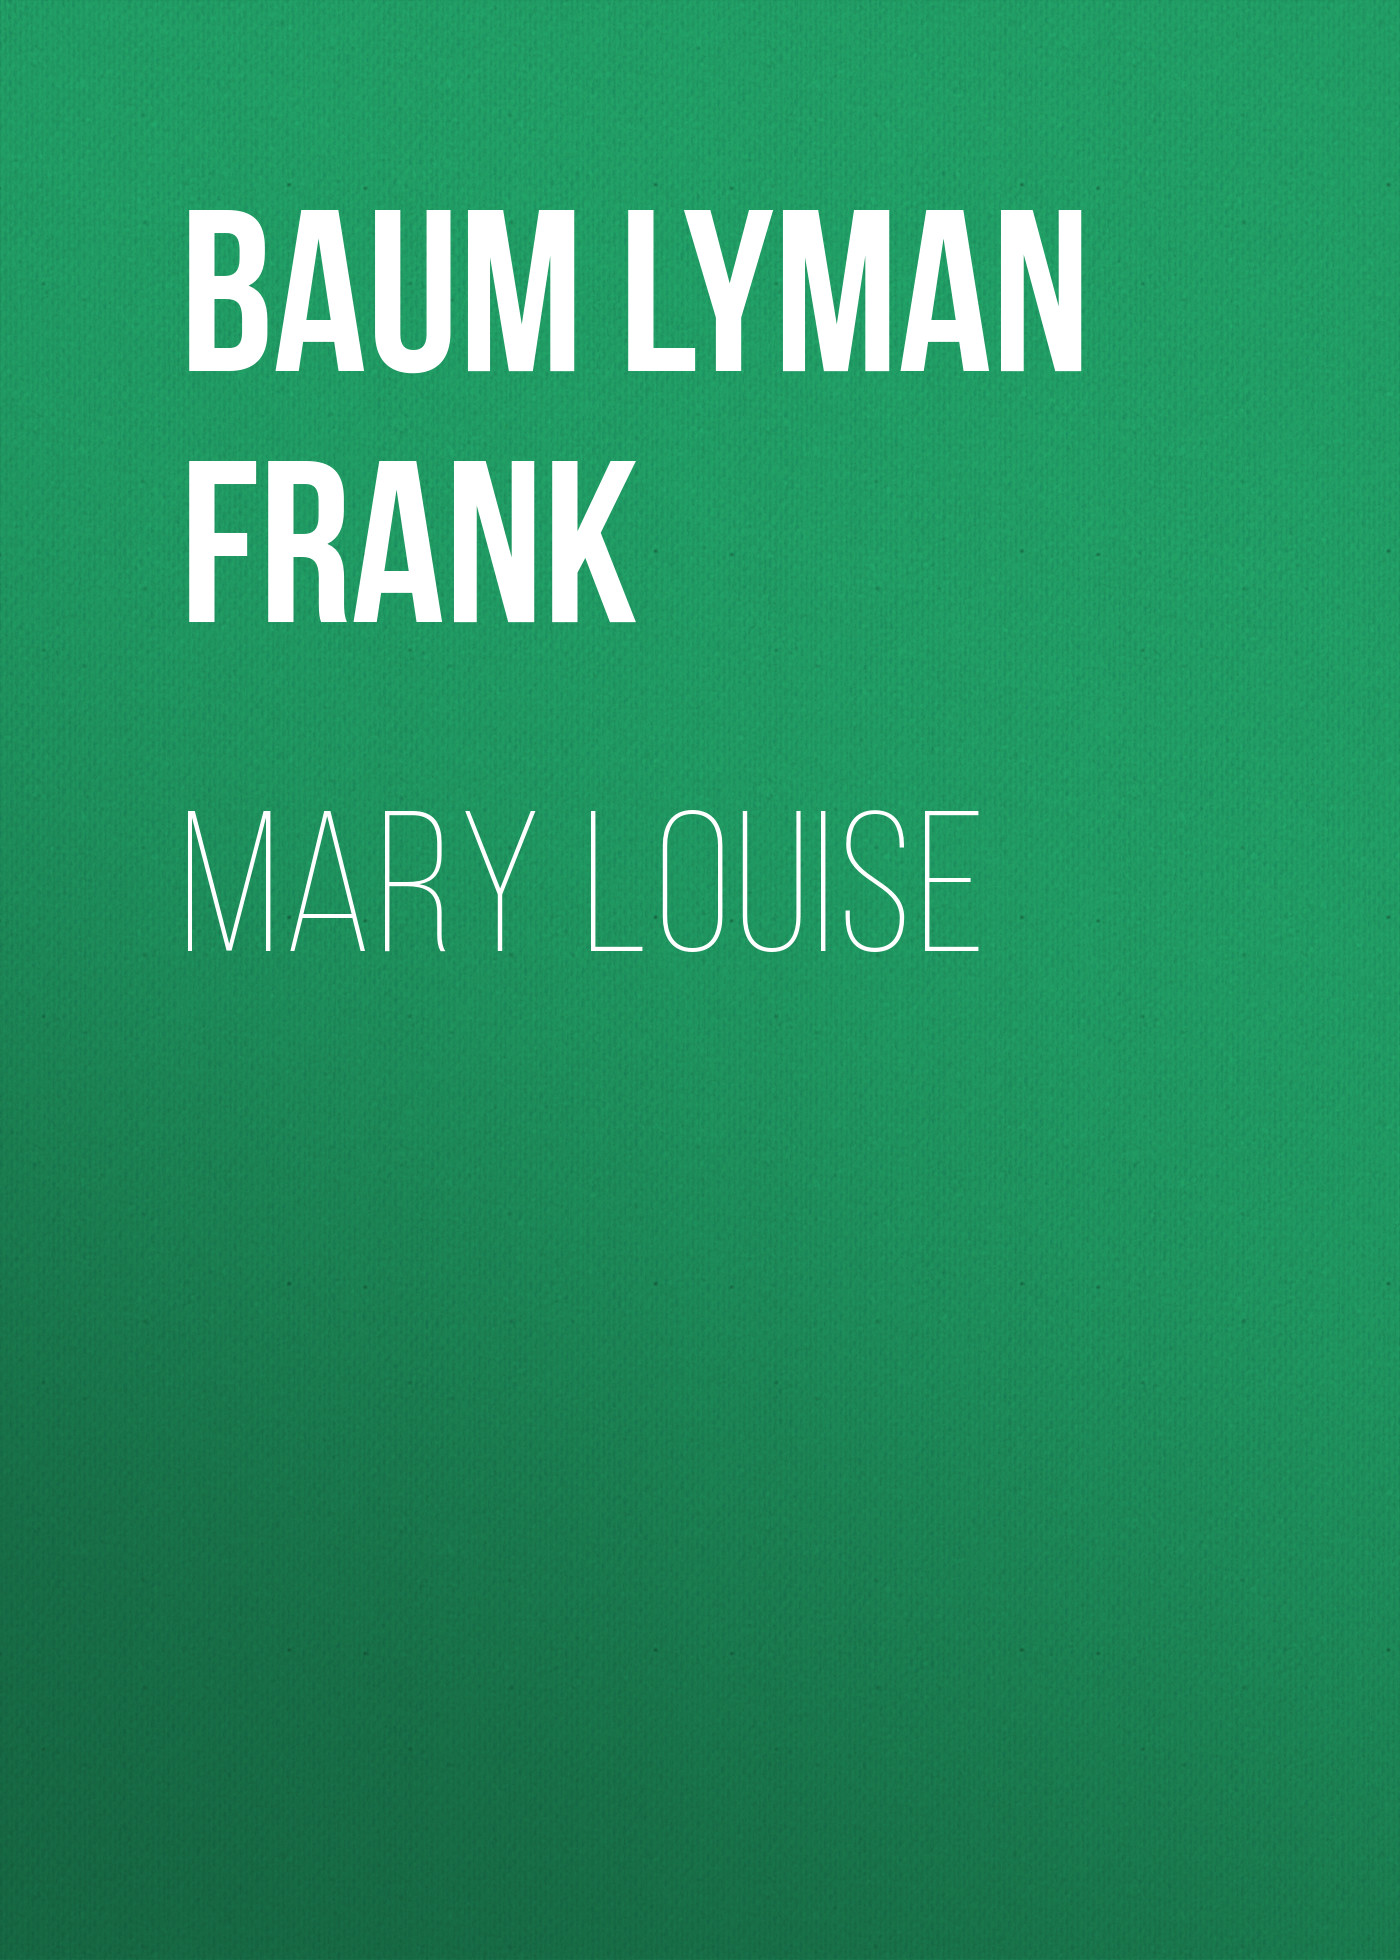 Книга Mary Louise из серии , созданная Lyman Baum, может относится к жанру Зарубежная старинная литература, Зарубежная классика. Стоимость электронной книги Mary Louise с идентификатором 25020851 составляет 0 руб.